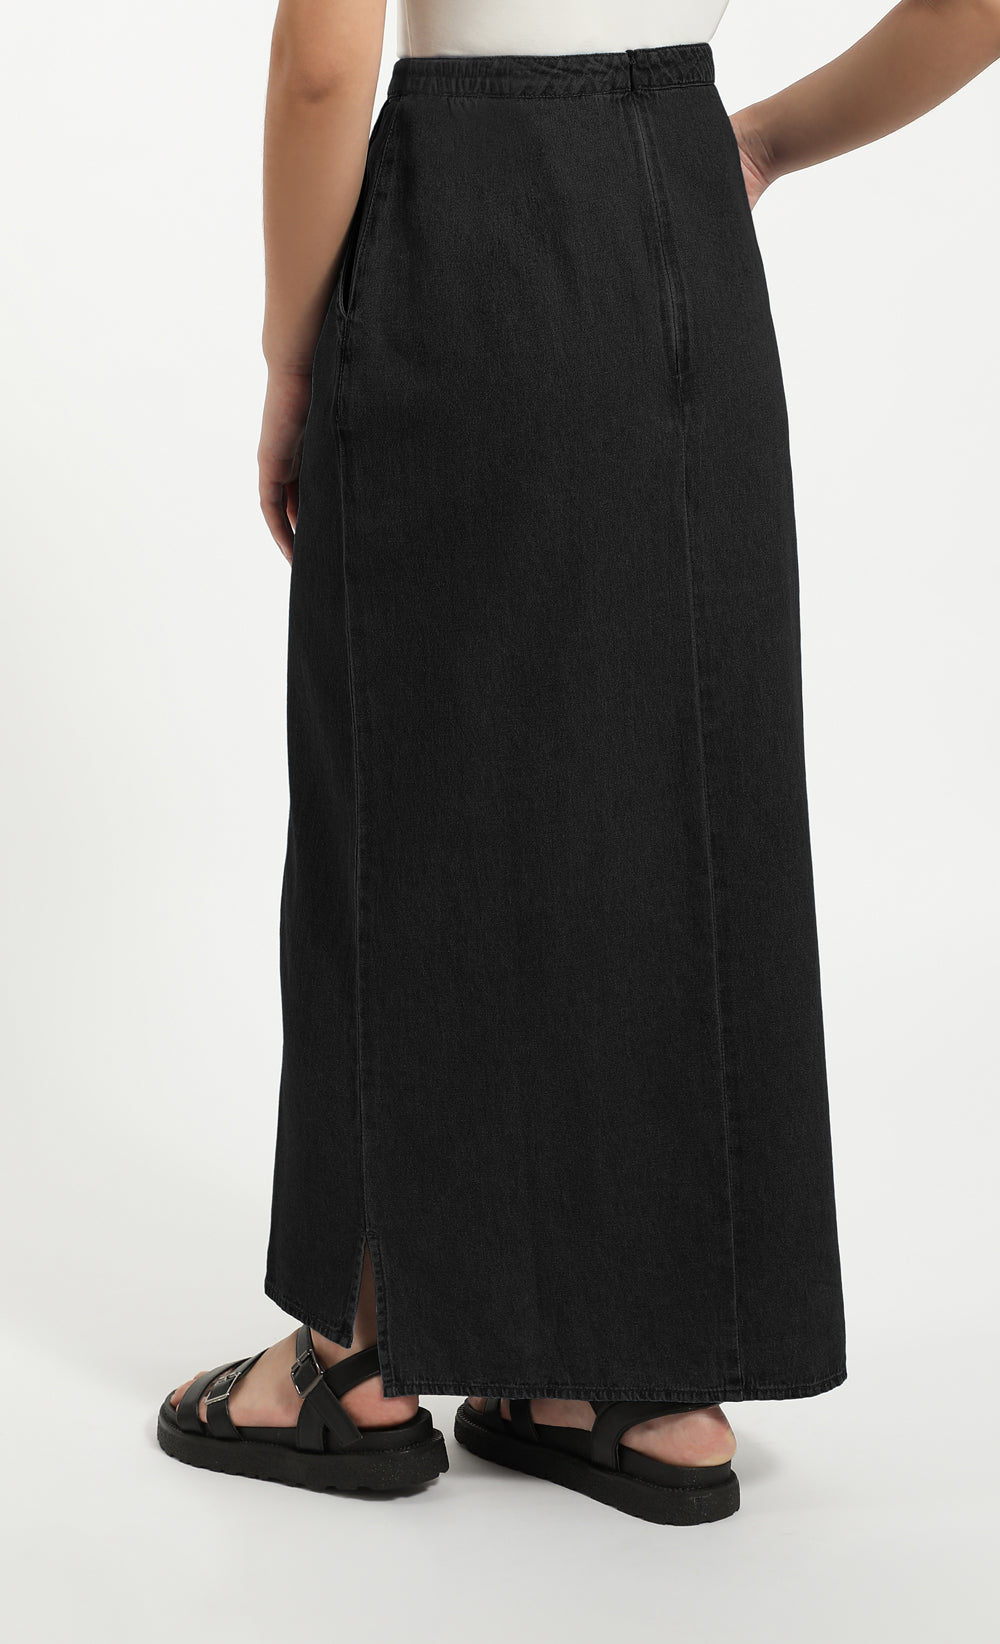 Denim Black Skirt Korean Style | Jean Skirt High Waist Korean - High Waist  Skirt - Aliexpress